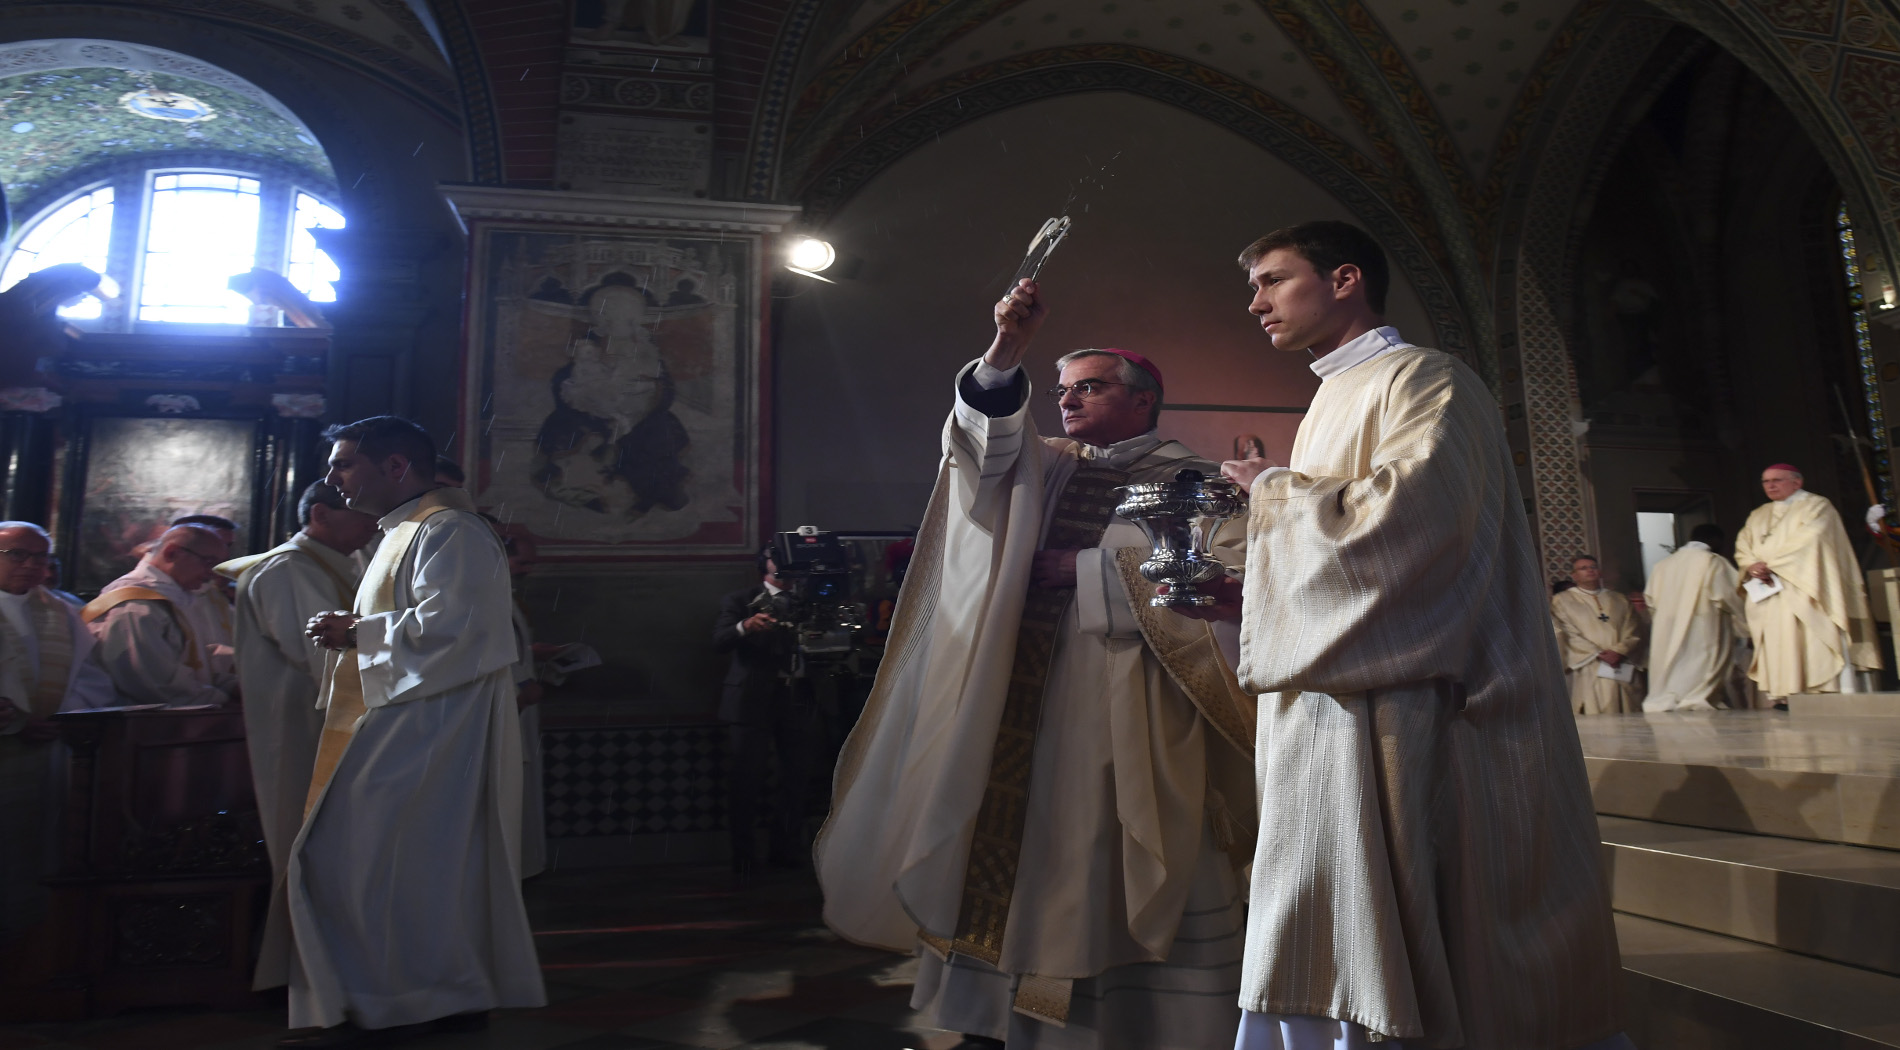 Lugano, 14 ottobre 2017 - Cattedrale San Lorenzo, prima messa e celebrazione liturgica della dedicazione dell' altare, inizio della celebrazione - foto Alessandro Crinari 
(Diocesi Lugano)